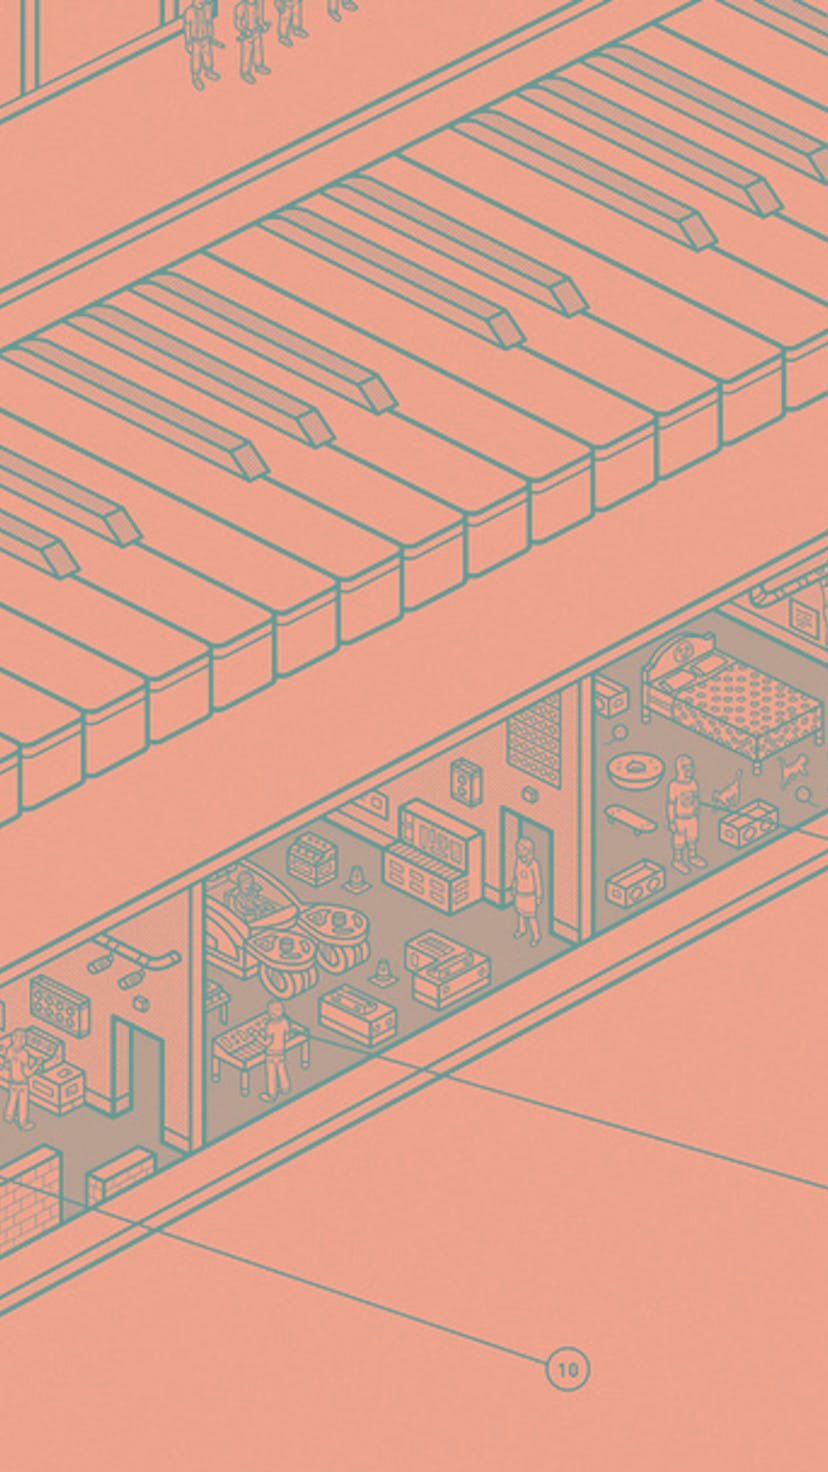 Cutaway illustration of a Moog synthesizer